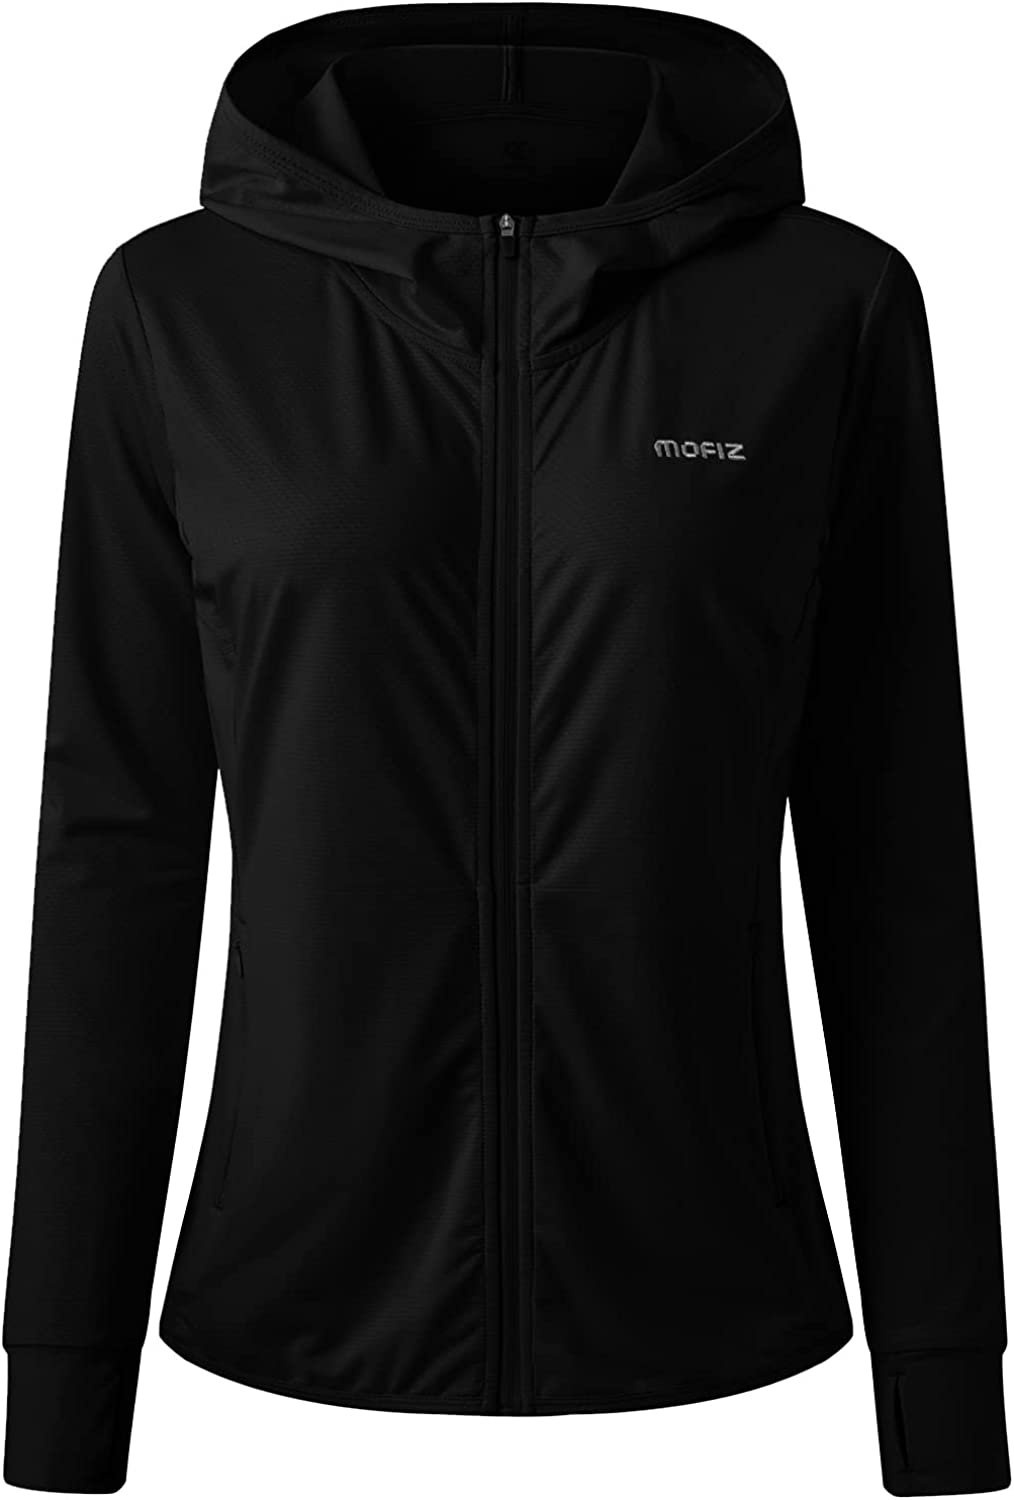 MoFiz Women's UPF 50+ Sun Protection Hoodie Jacket Lightweight Long Sleeve Sun Shirt for Summer with Zipper Pockets